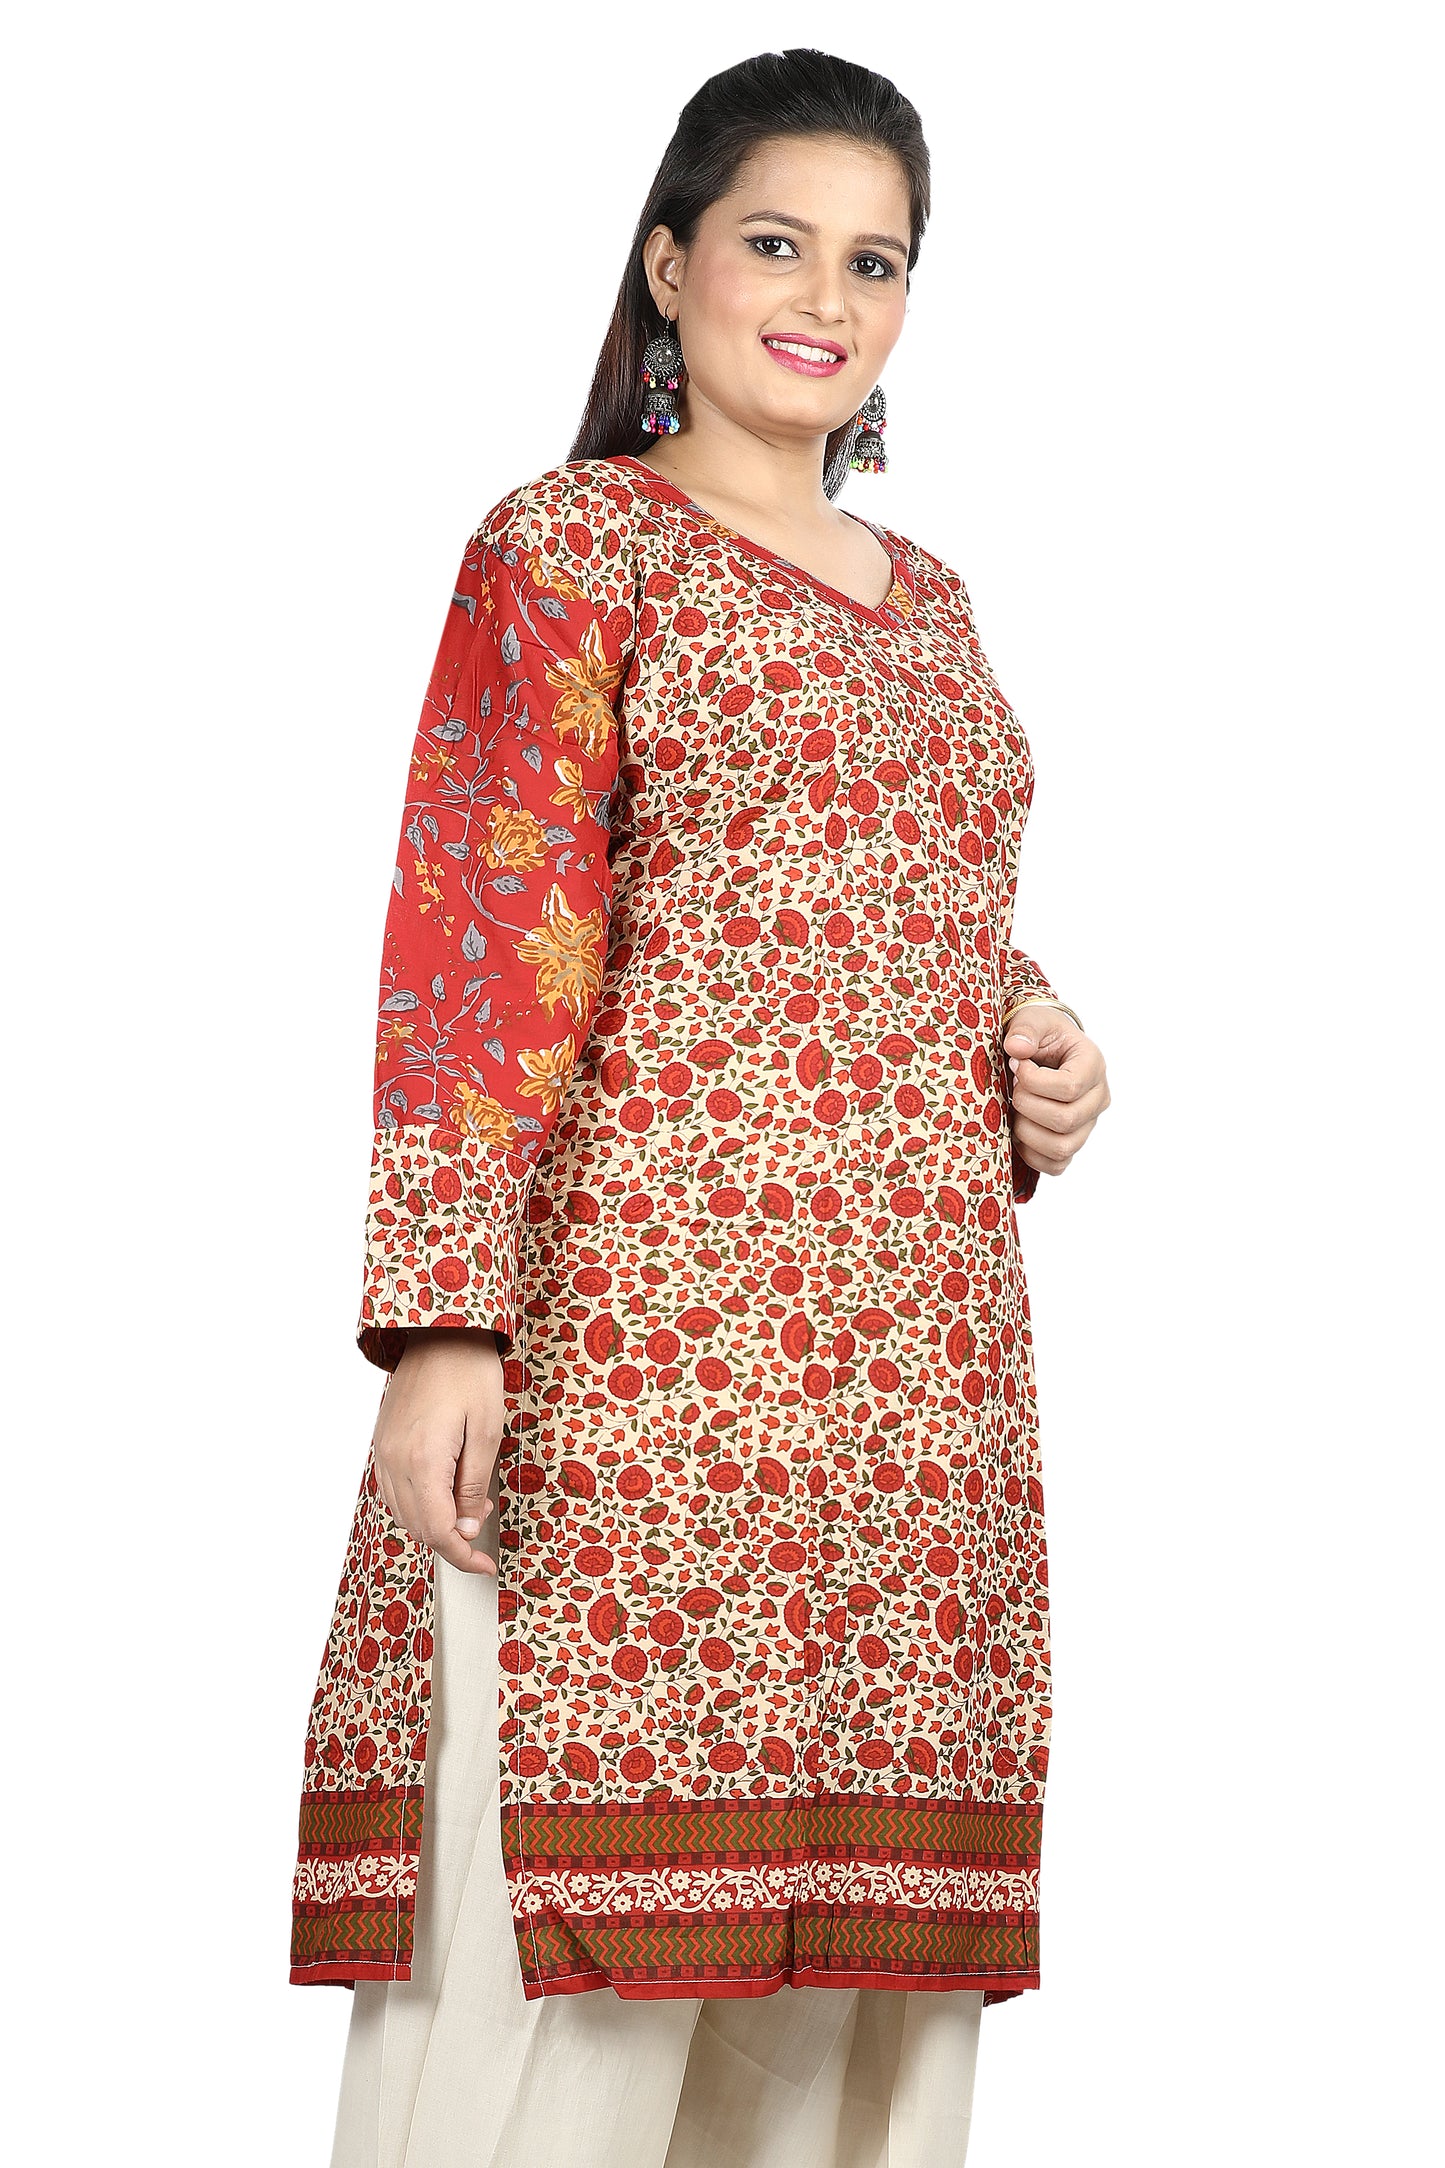 Red Cotton  Floral print  Dress Salwar kameez  Plus chest  Size 50